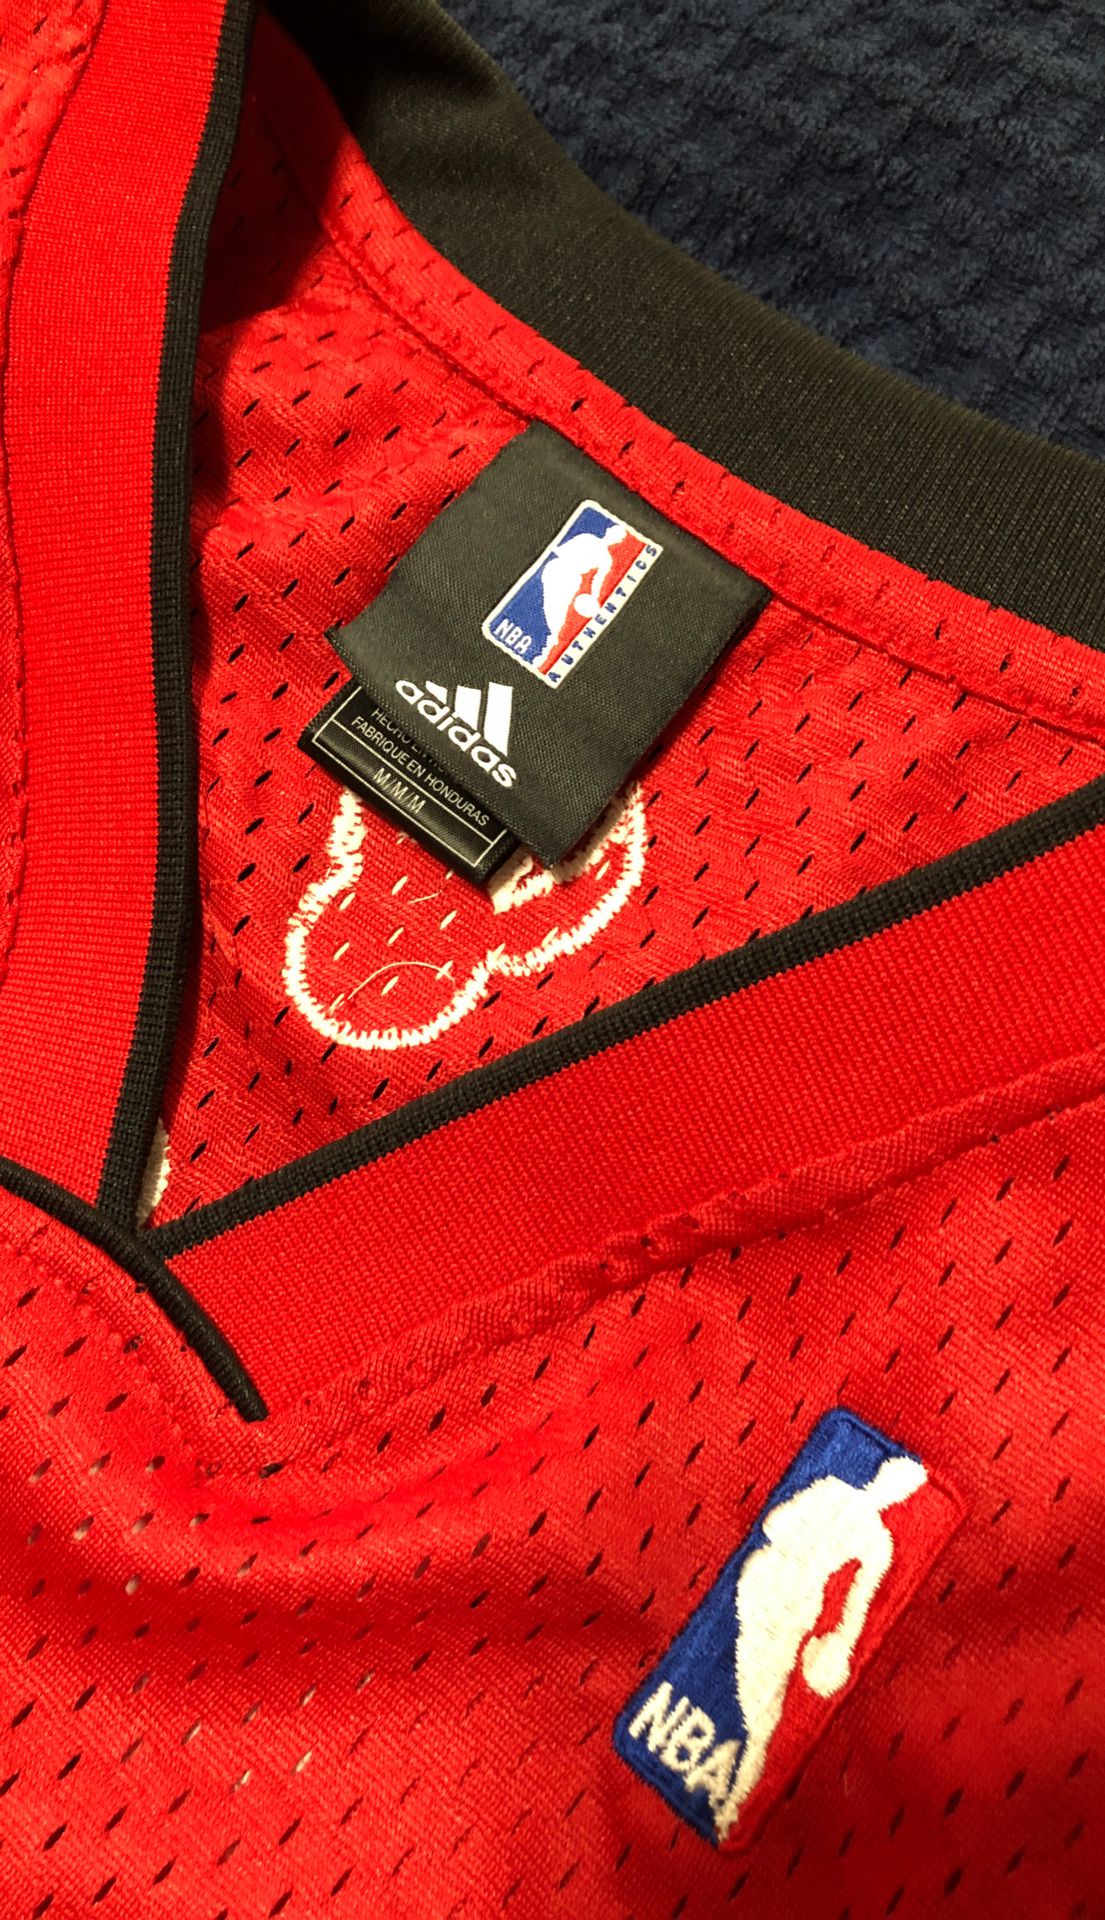 Adidas Swingman Chris Bosh Raptors jersey SZ M for Sale in Portland, OR -  OfferUp